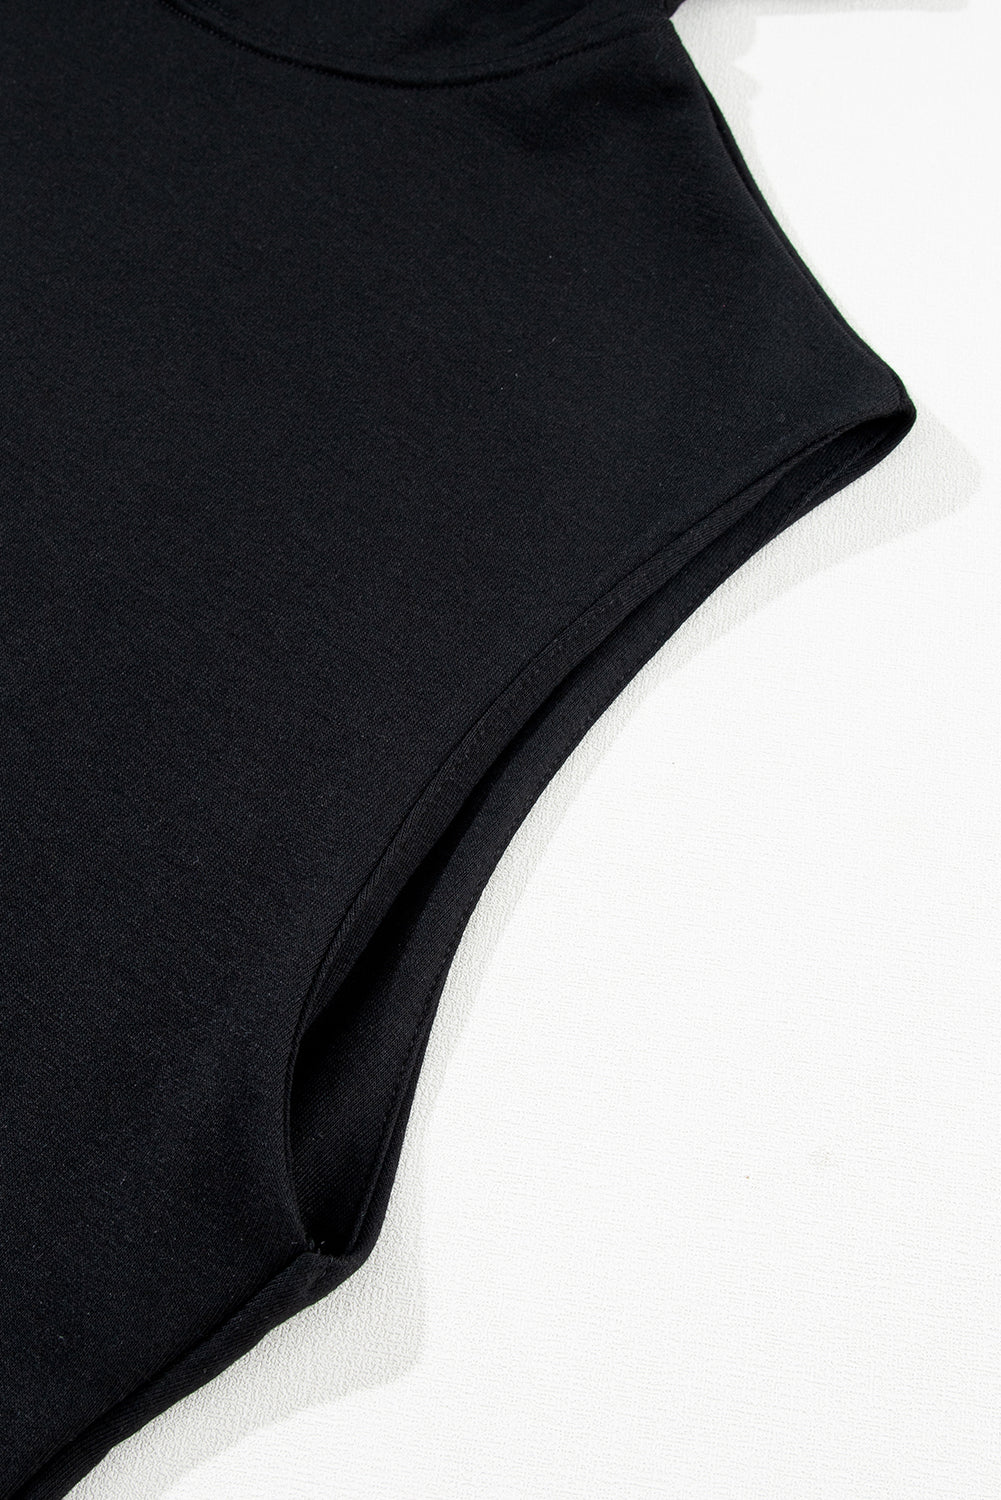 Komplet crne jednobojne majice s kapuljačom i kratkim hlačama bez rukava